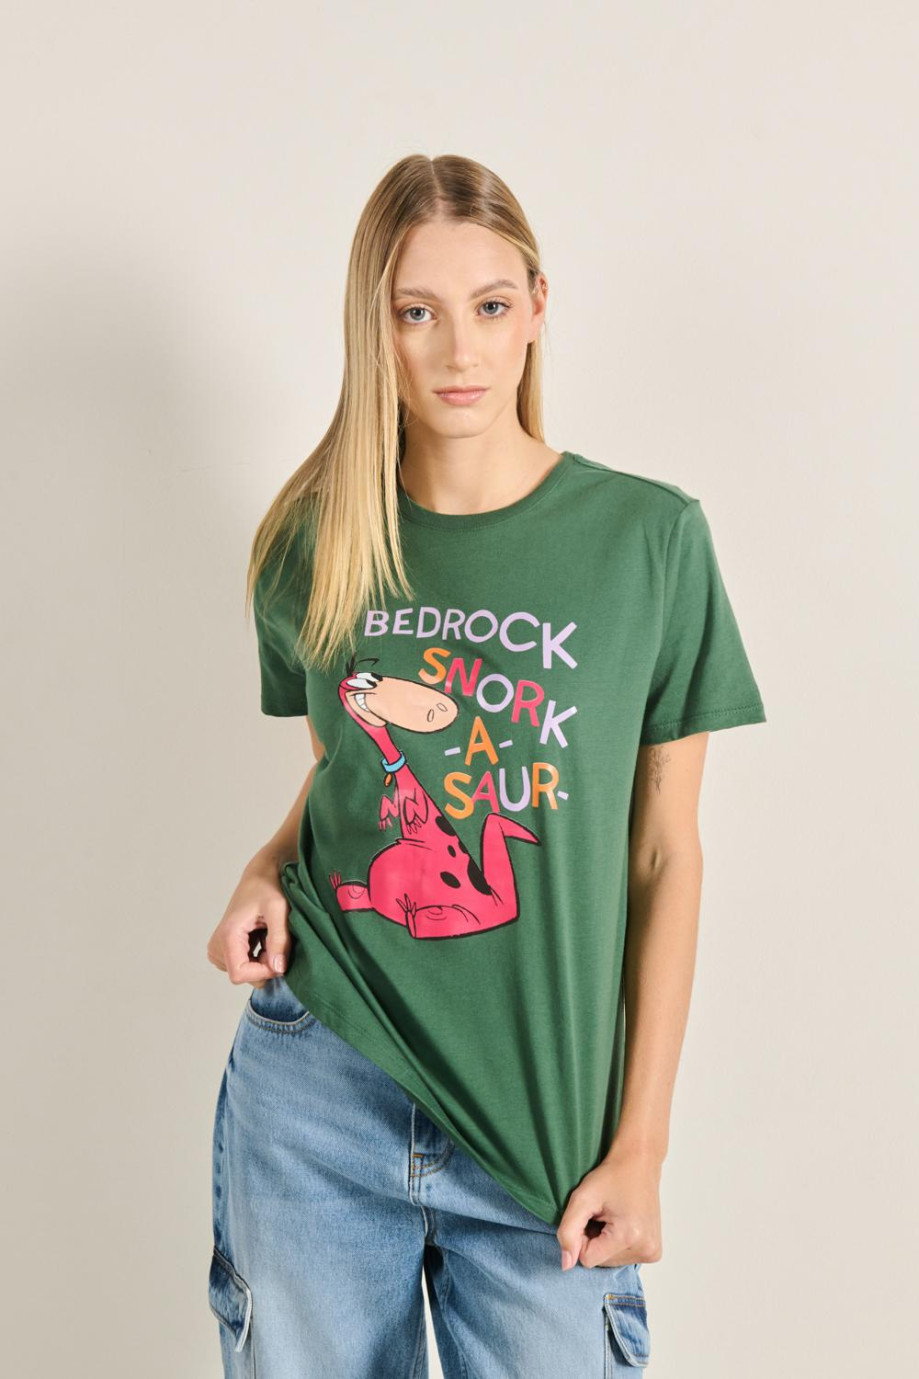 Camiseta unicolor con diseño de Los Picapiedra y manga corta